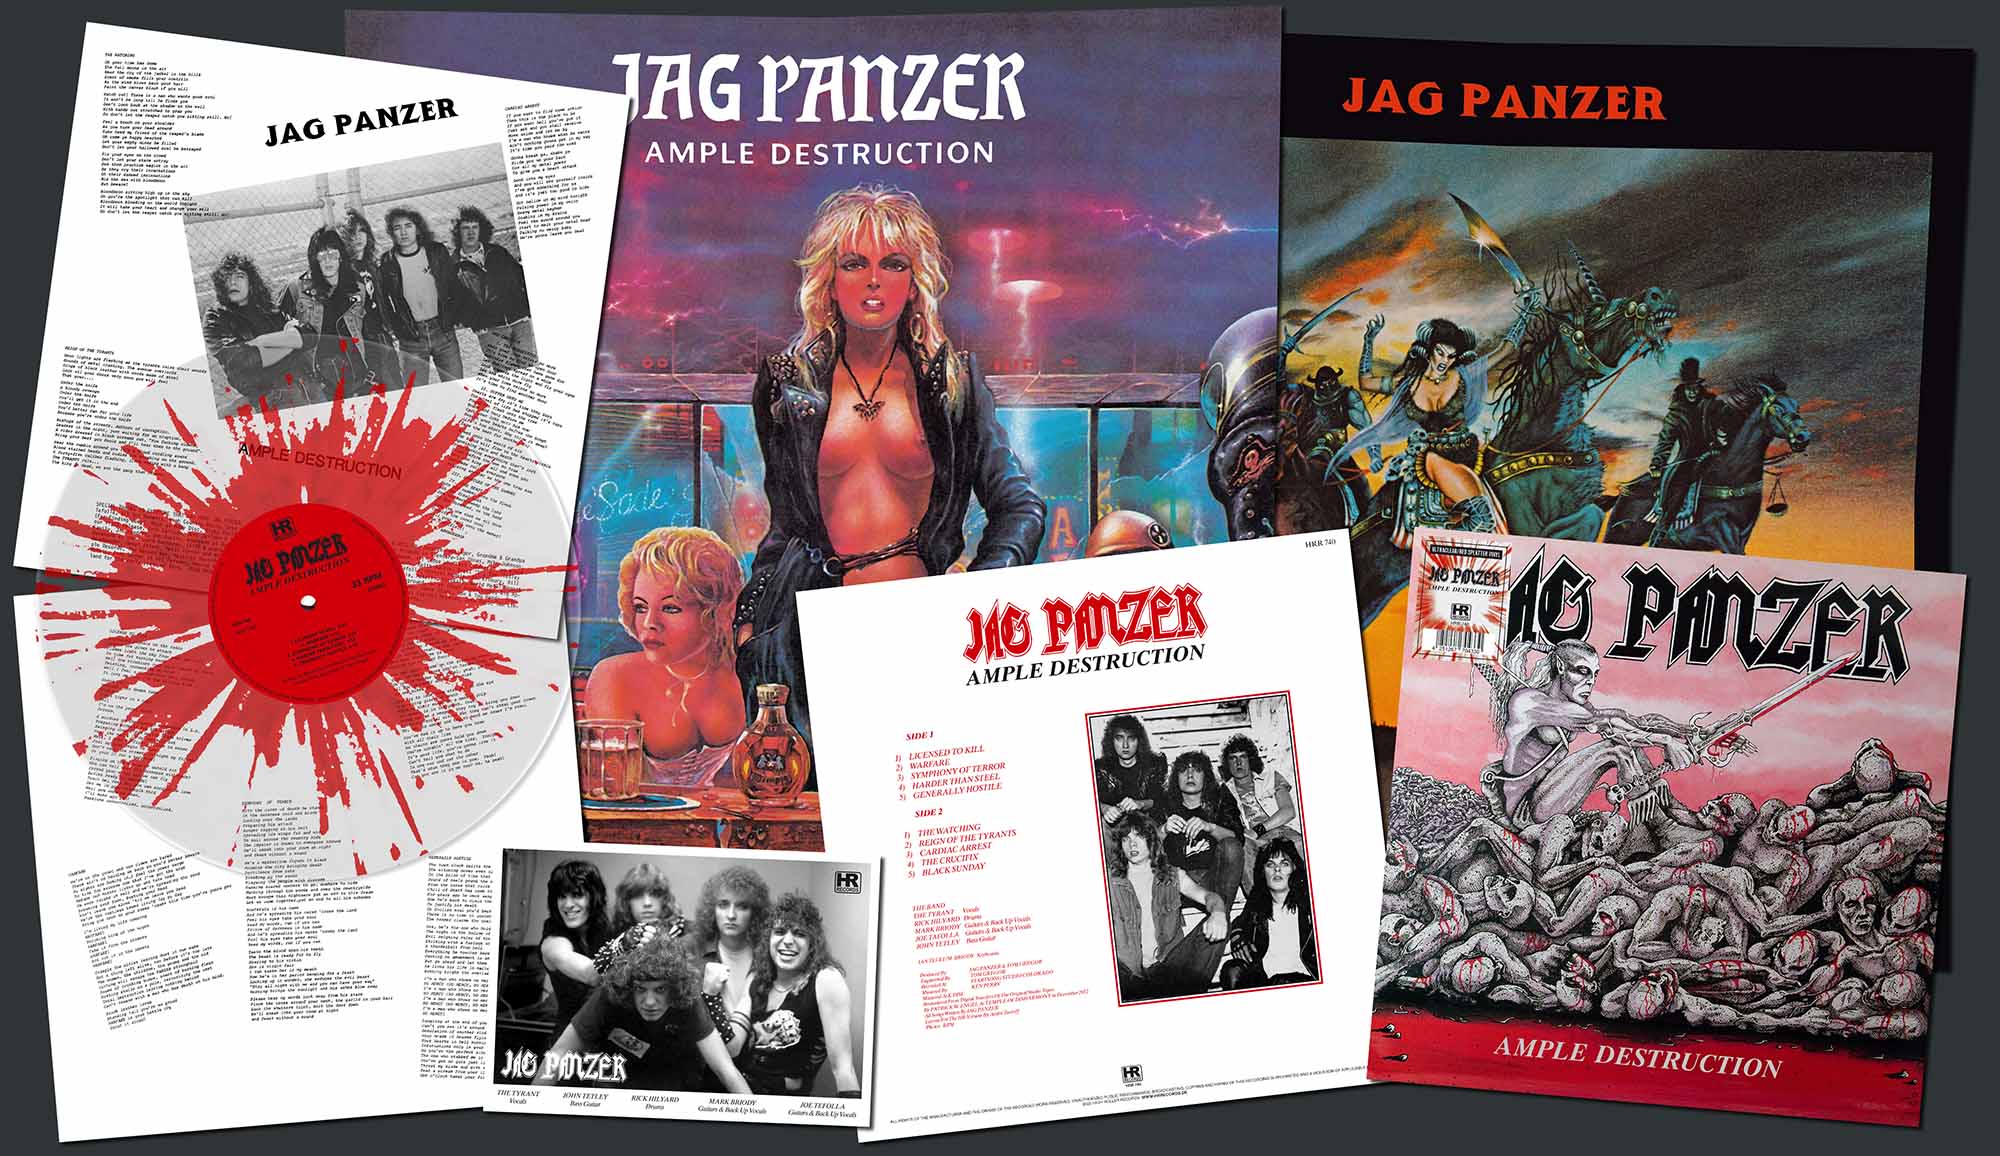 JAG PANZER - Ample Destruction  LP  METALCORE COVER